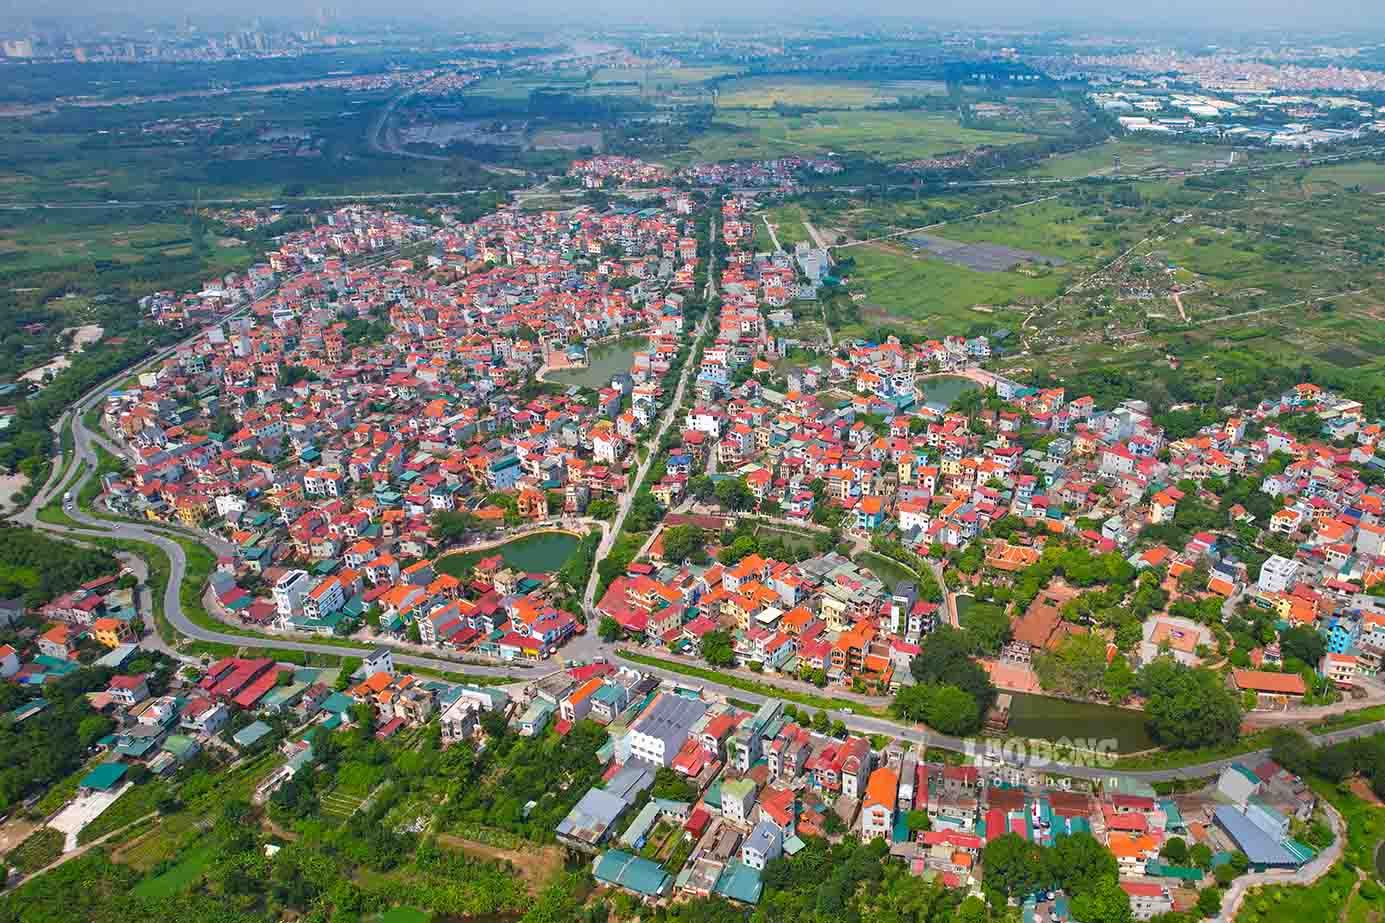 Bán nhà Hà Nội: Tham khảo giá chung cư huyện Gia Lâm cập nhật mới nhất